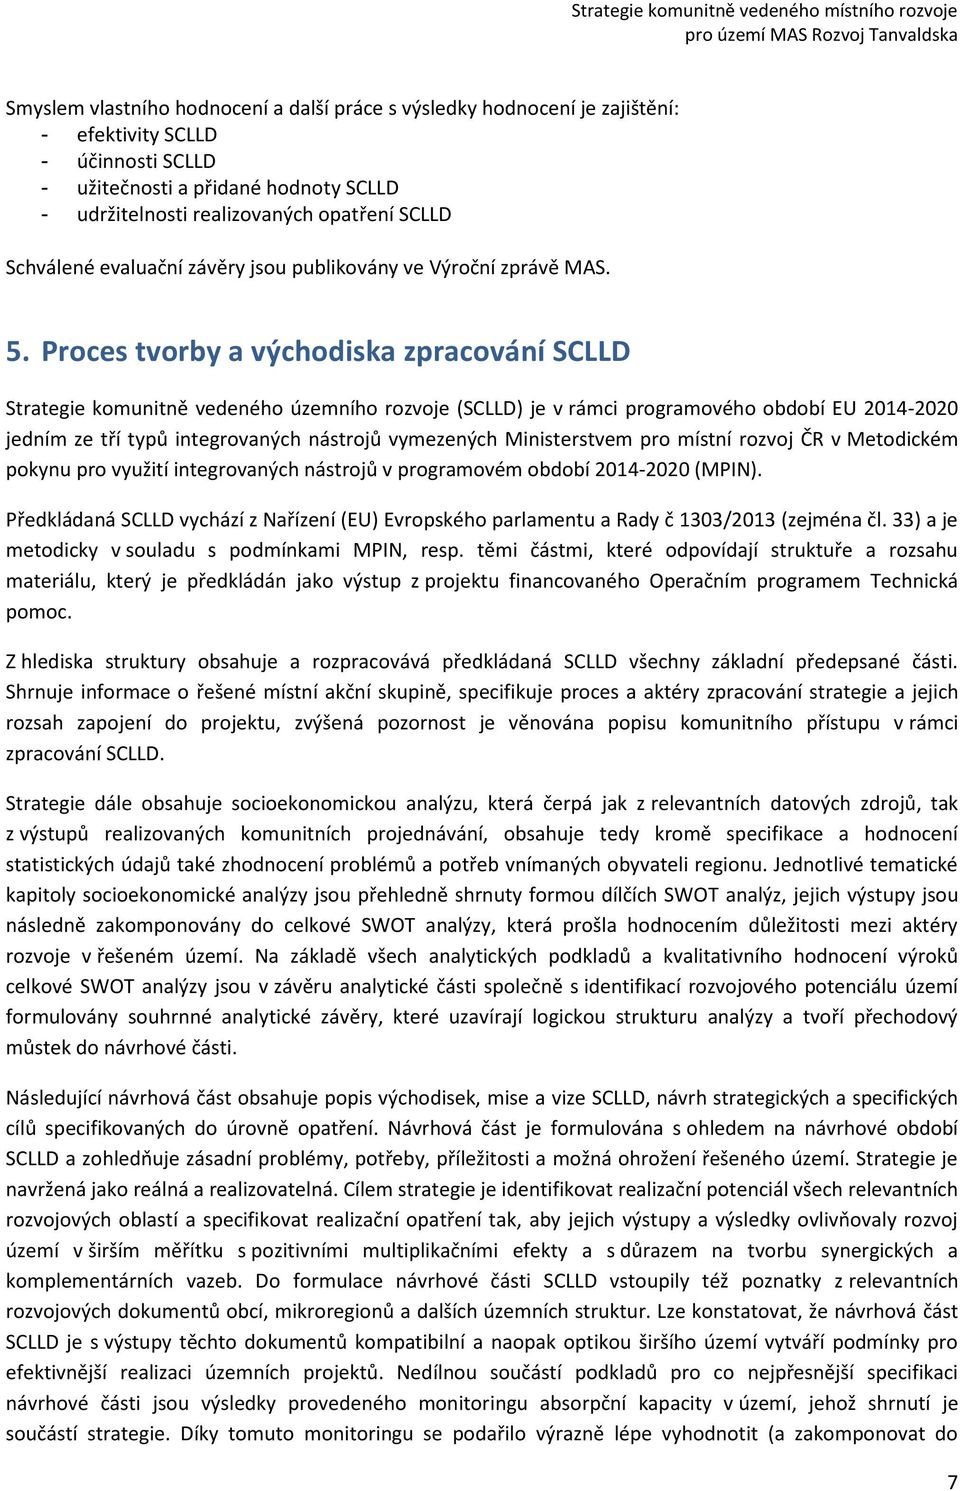 Proces tvorby a východiska zpracování SCLLD Strategie komunitně vedeného územního rozvoje (SCLLD) je v rámci programového období EU 2014-2020 jedním ze tří typů integrovaných nástrojů vymezených